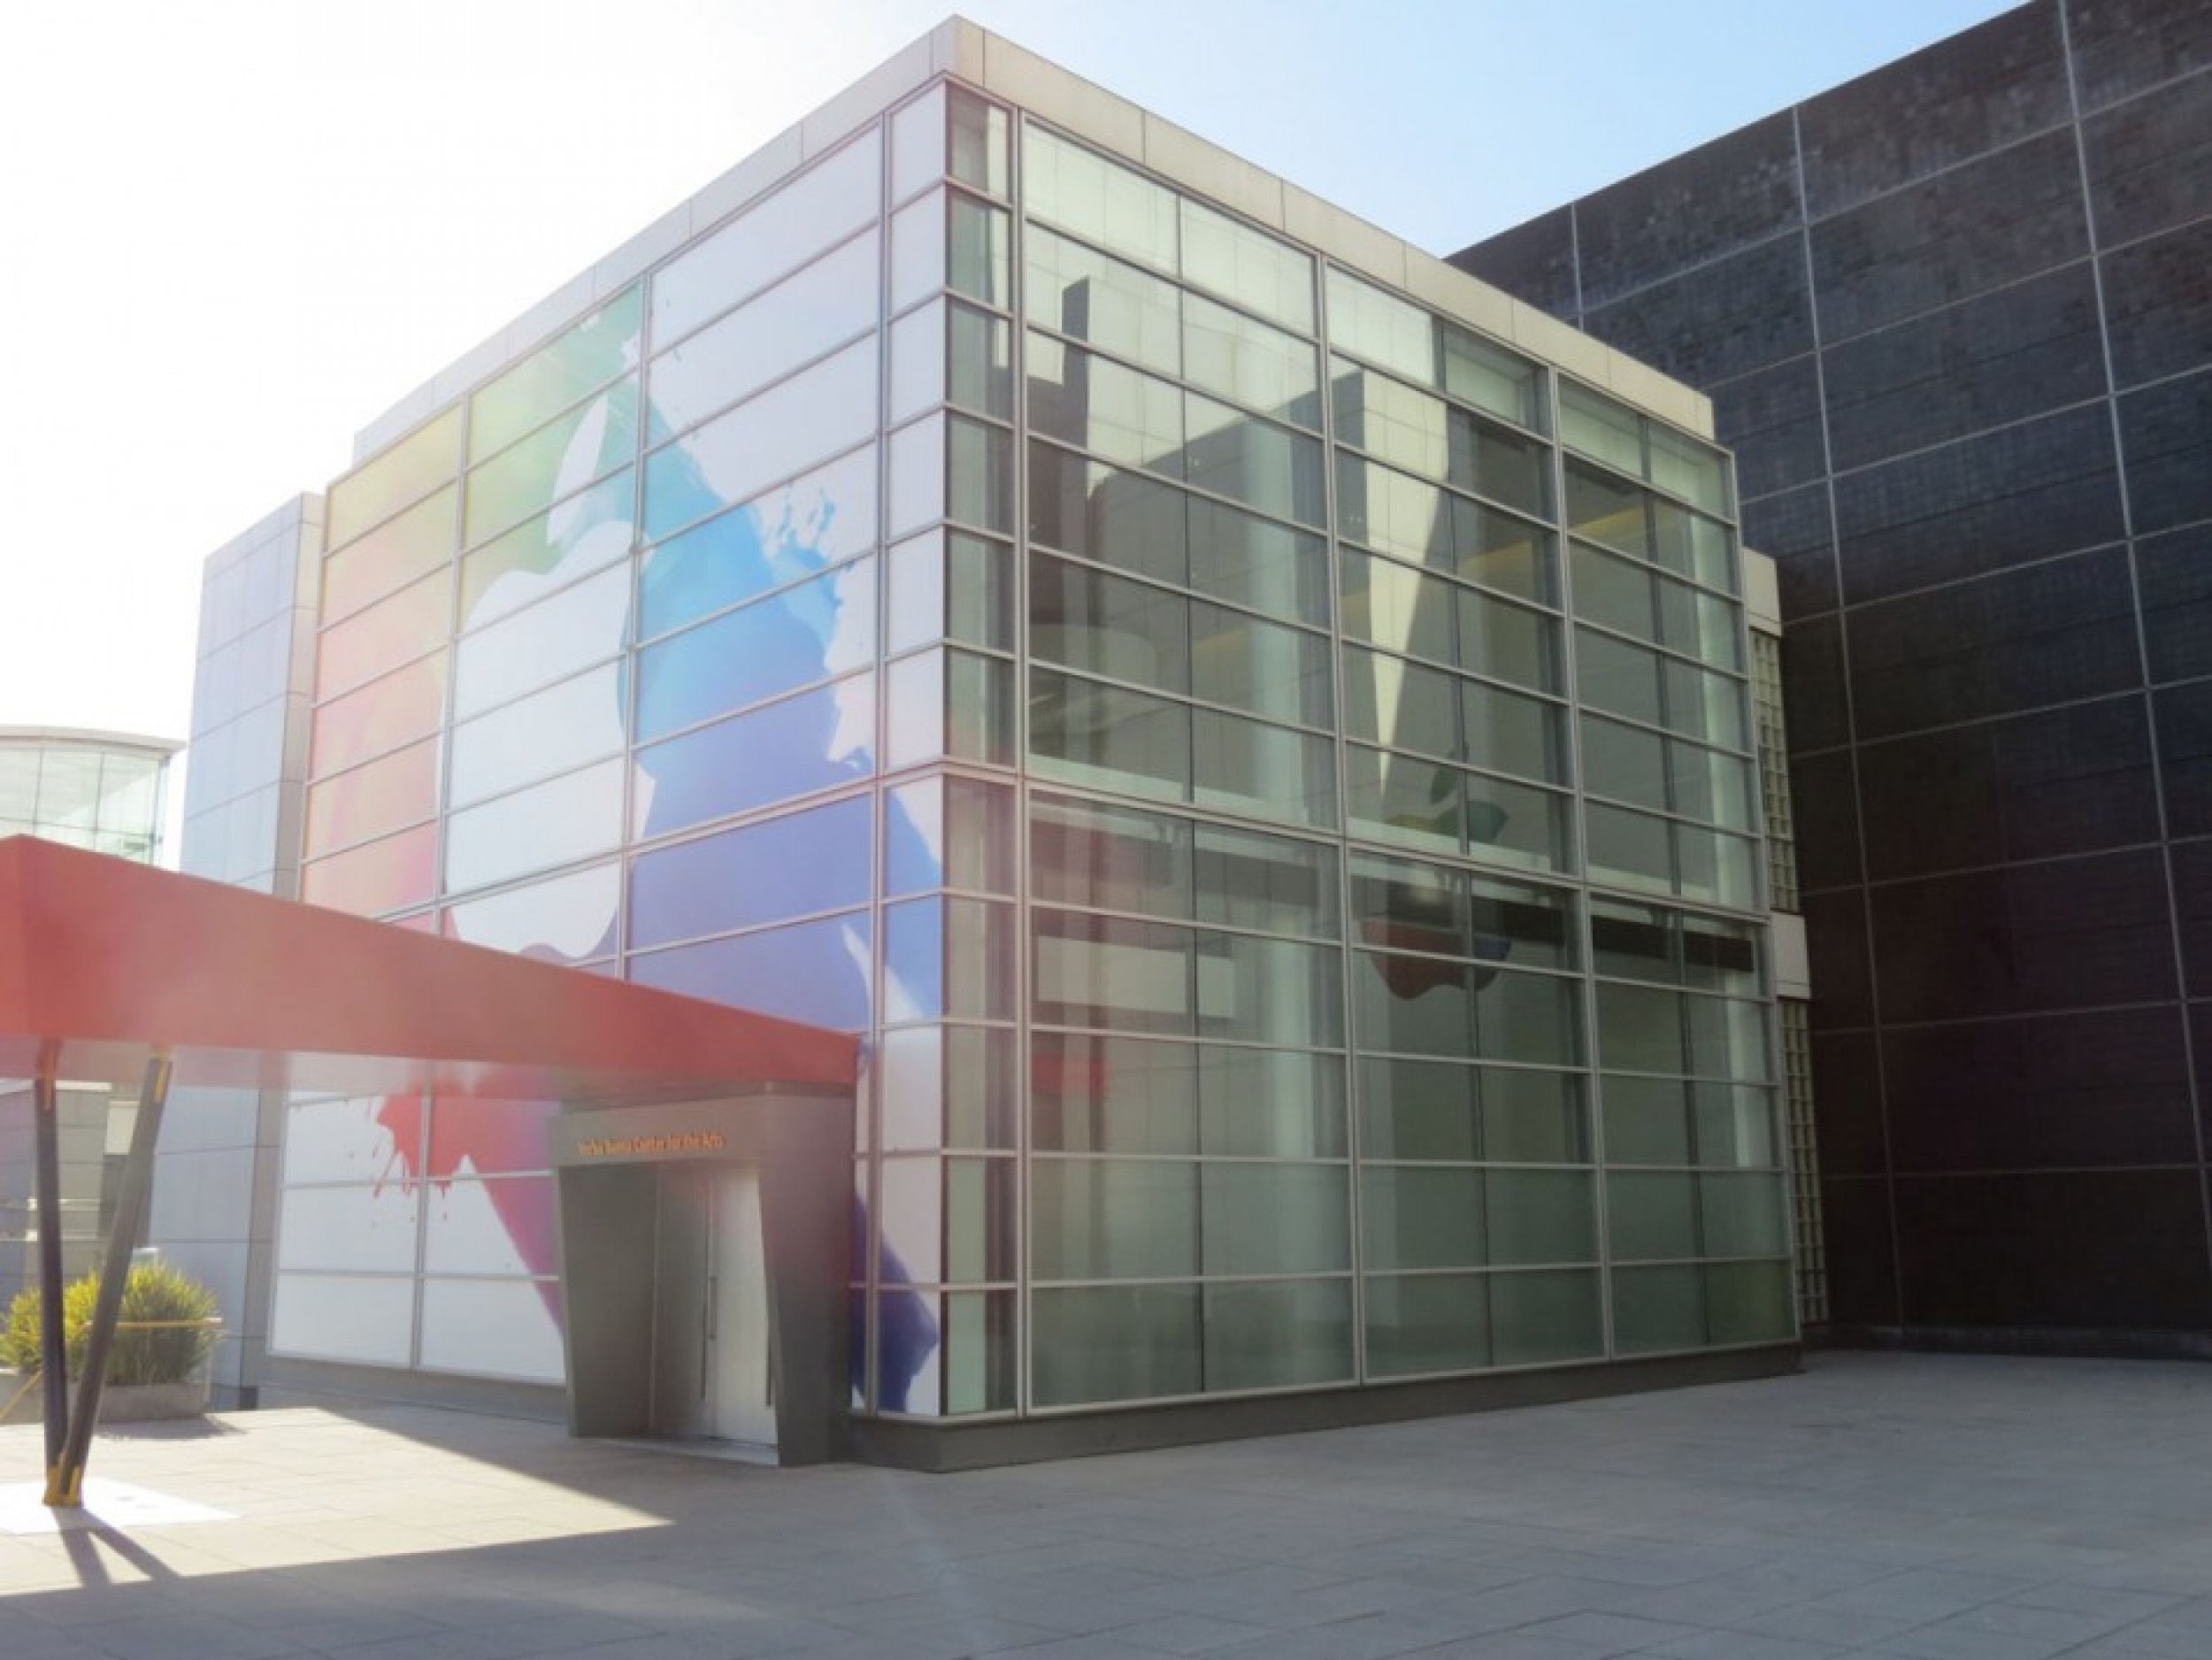 The facade of Yerba Buena Center for the Arts 